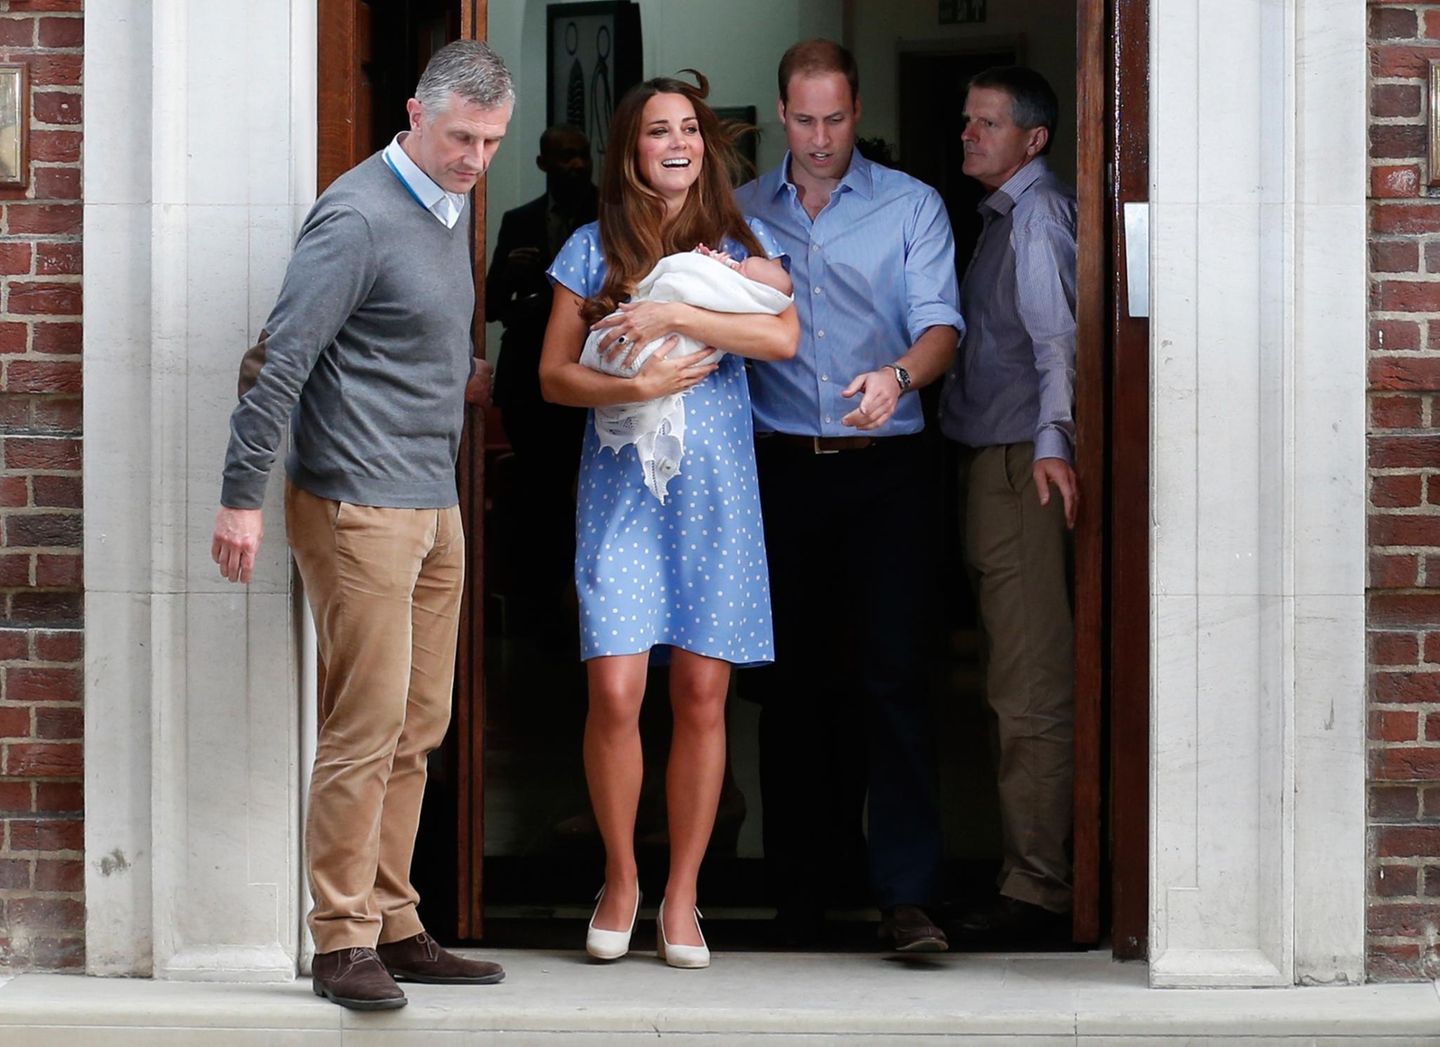 Um 19.13 Uhr Ortszeit ist es dann so weit: Die frischgebackenen Eltern Herzogin Catherine und Prinz William treten vor das Krankenhaus.